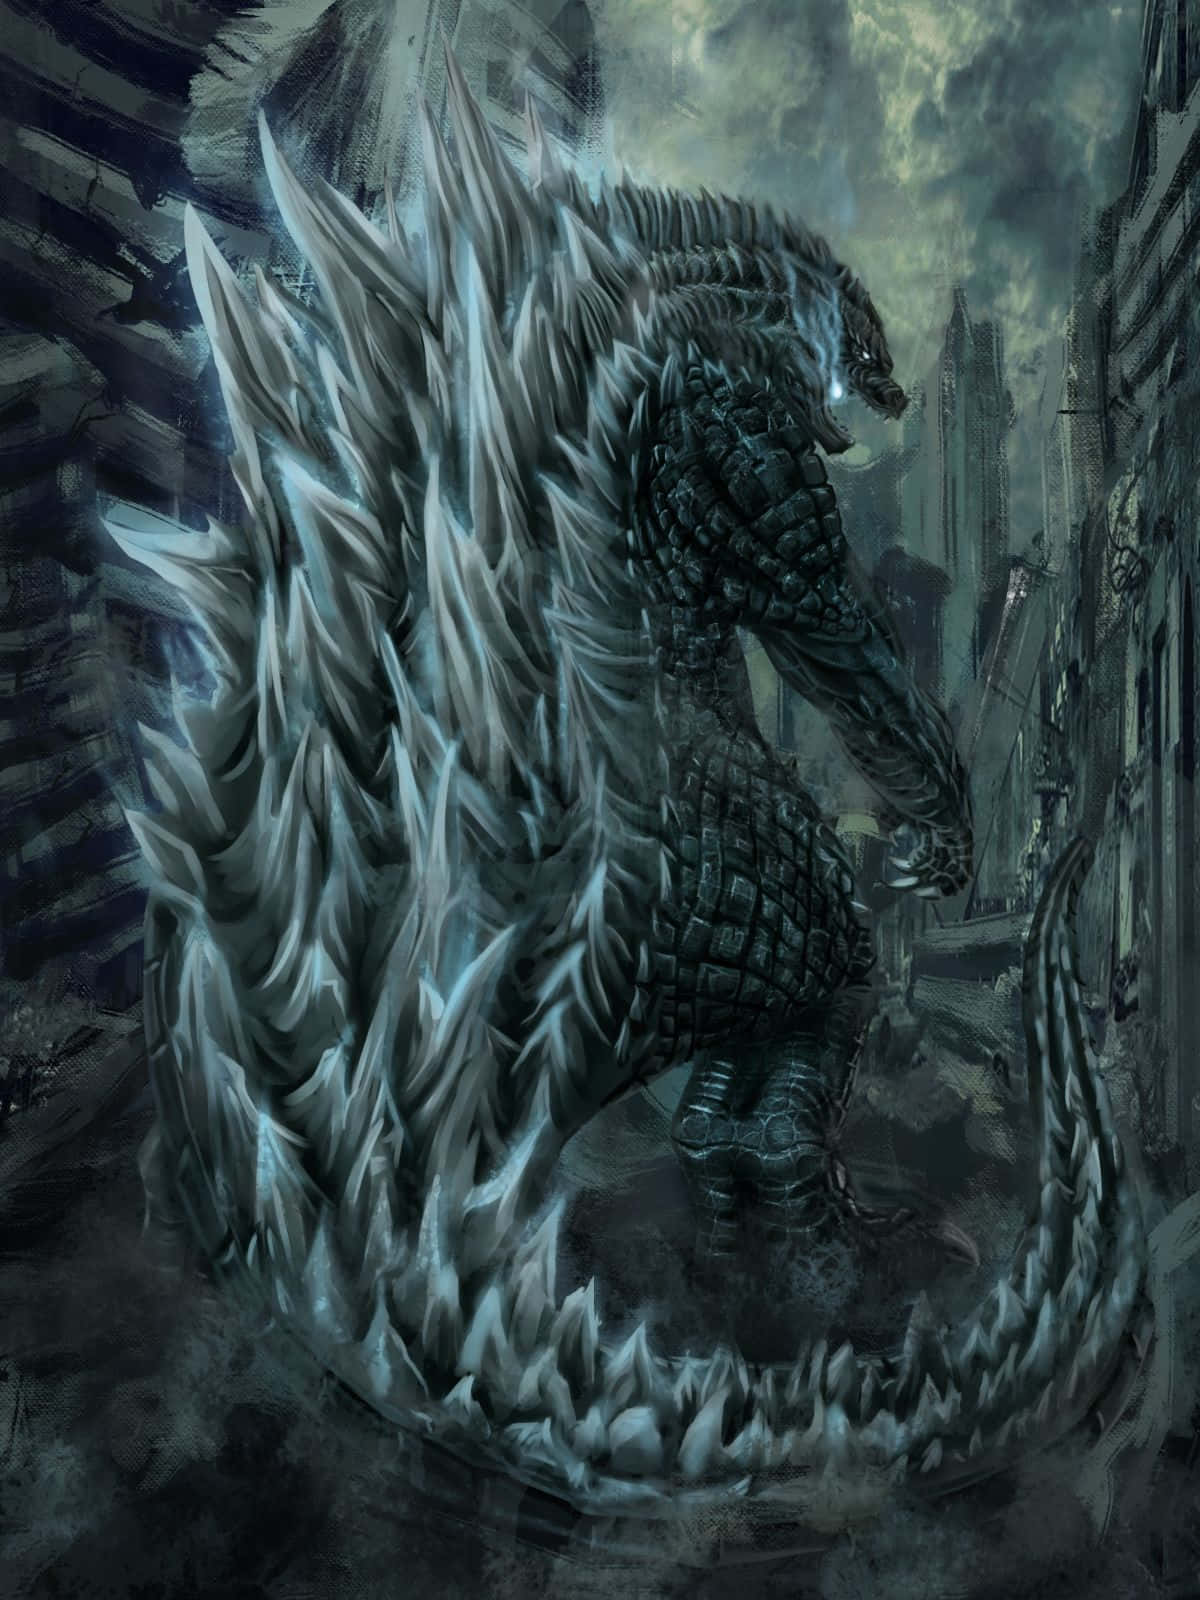 Monstrous Godzilla Art - Roaring in the City Wallpaper